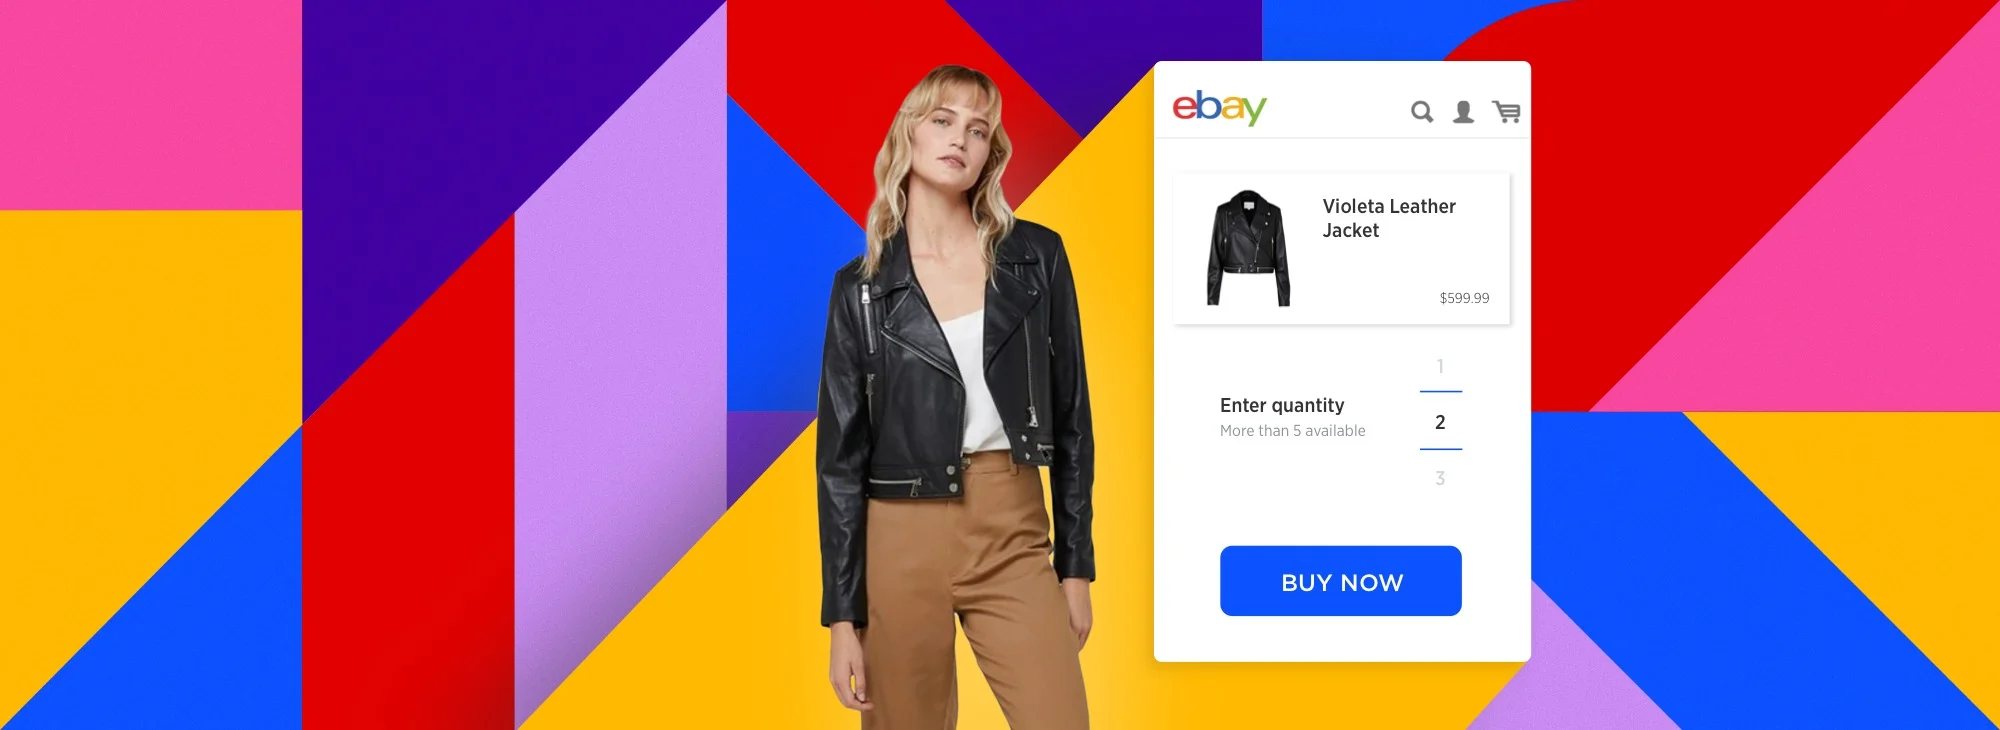 Ebay.com Banner